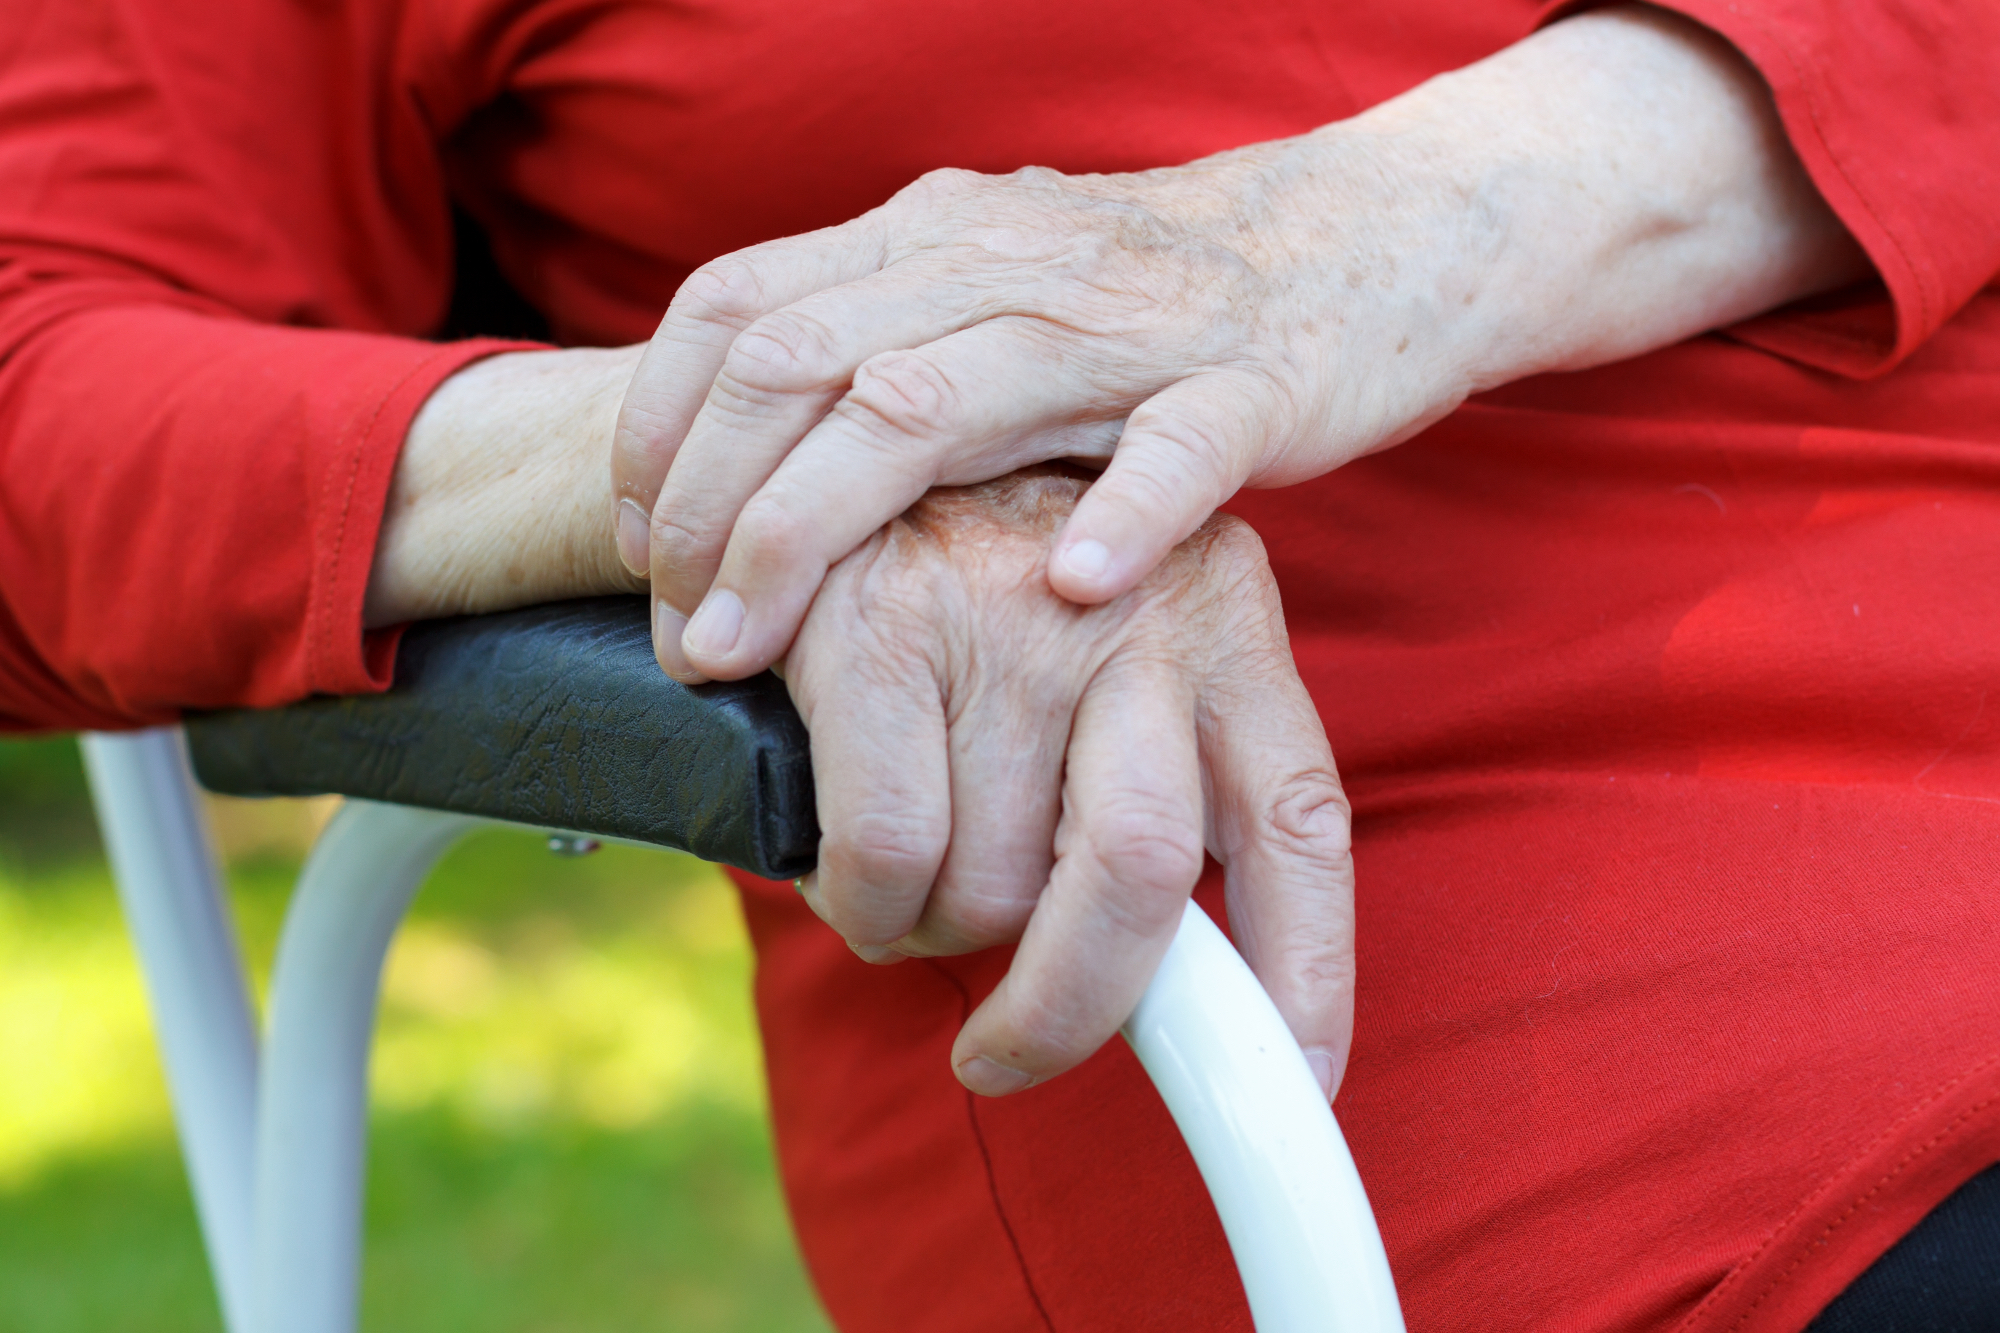 Artritis je lahko zelo nadležna bolezen